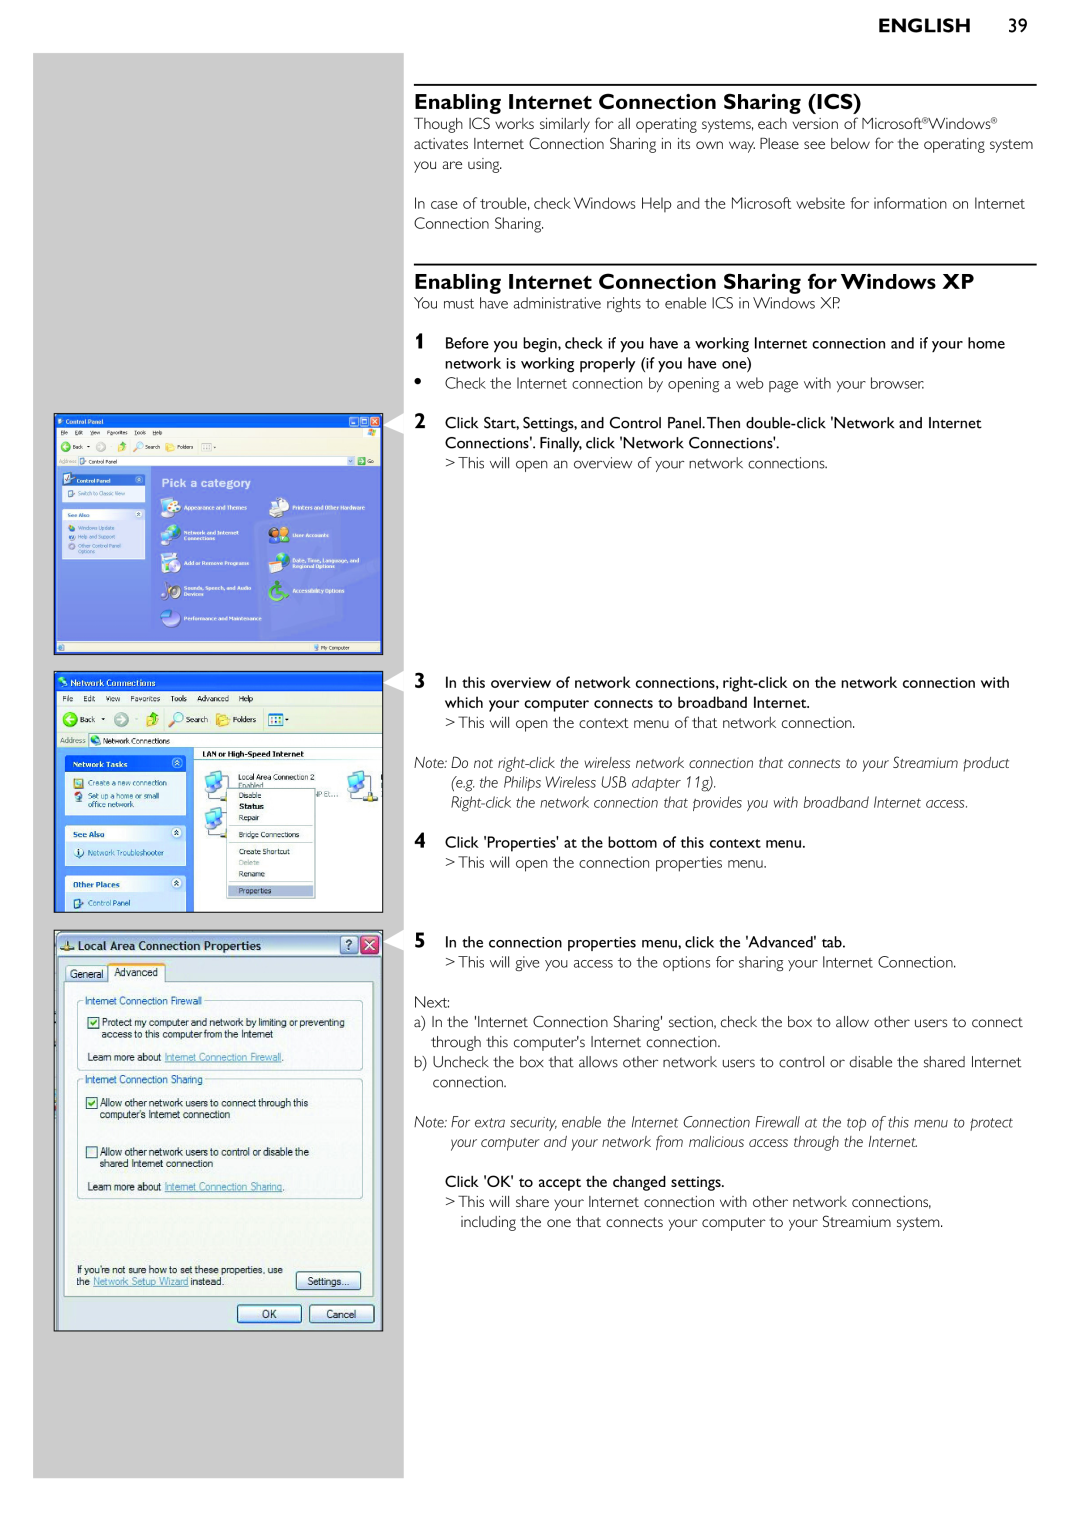 Pioneer SL50I manual Enabling Internet Connection Sharing ICS, Enabling Internet Connection Sharing for Windows XP, English 